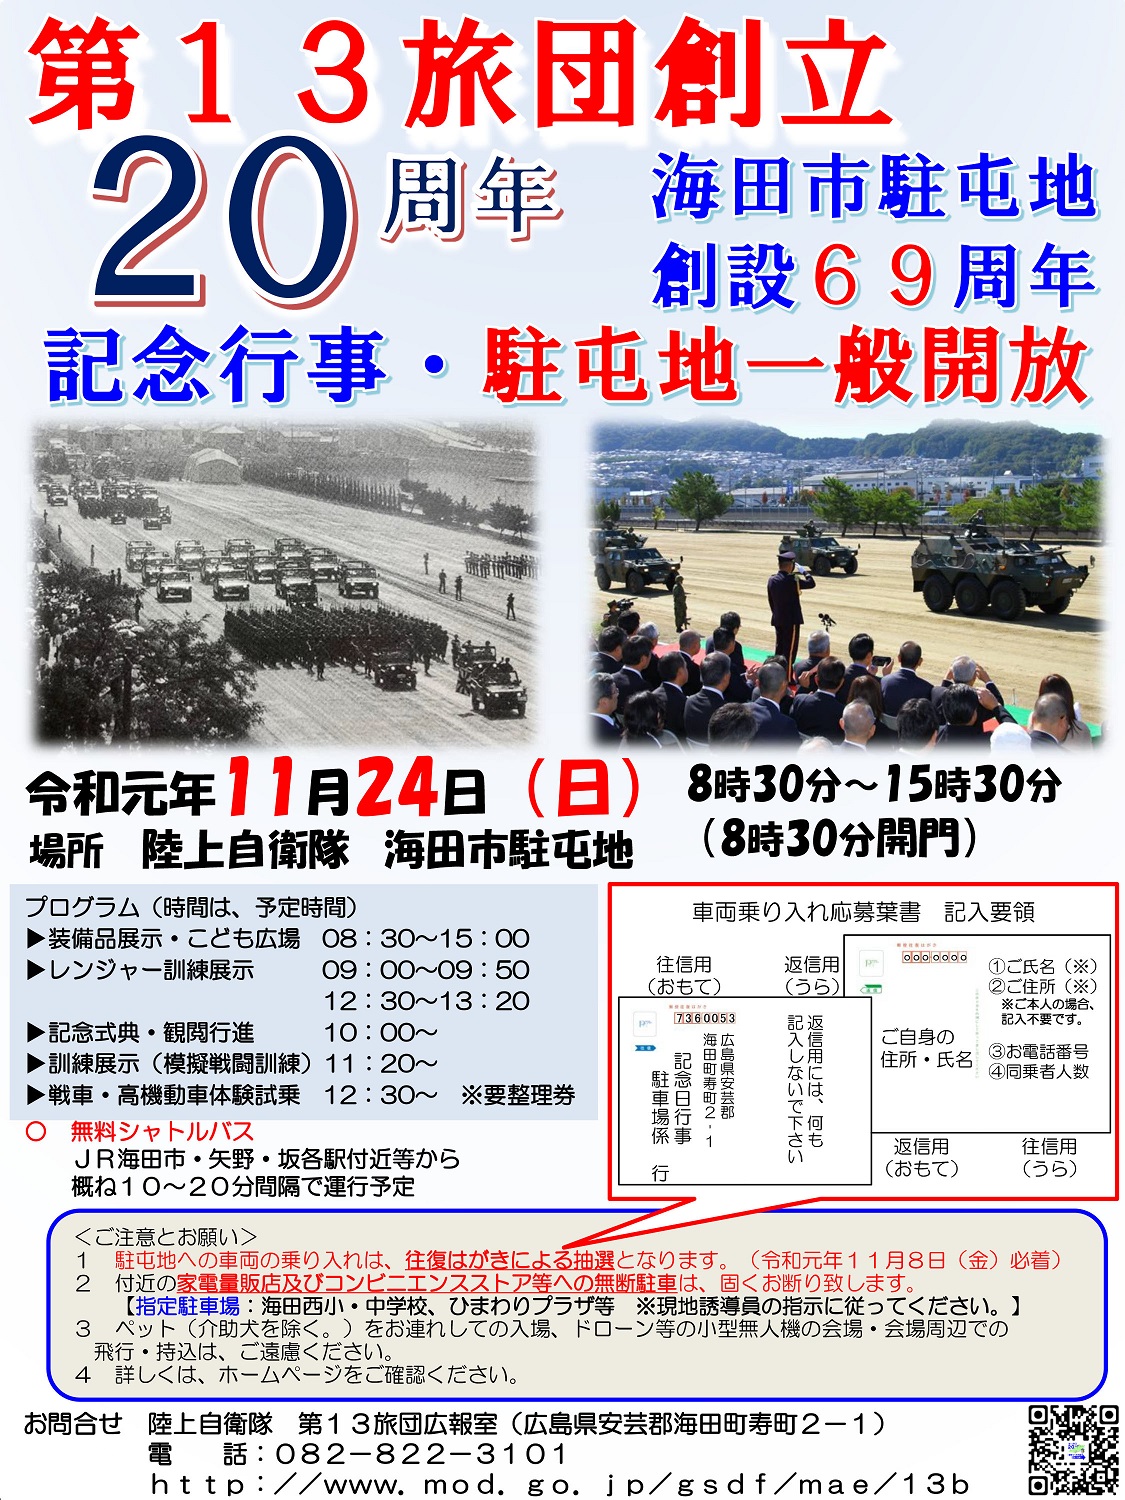 第13旅団創立20周年 海田市駐屯地創設69周年記念行事ポスター